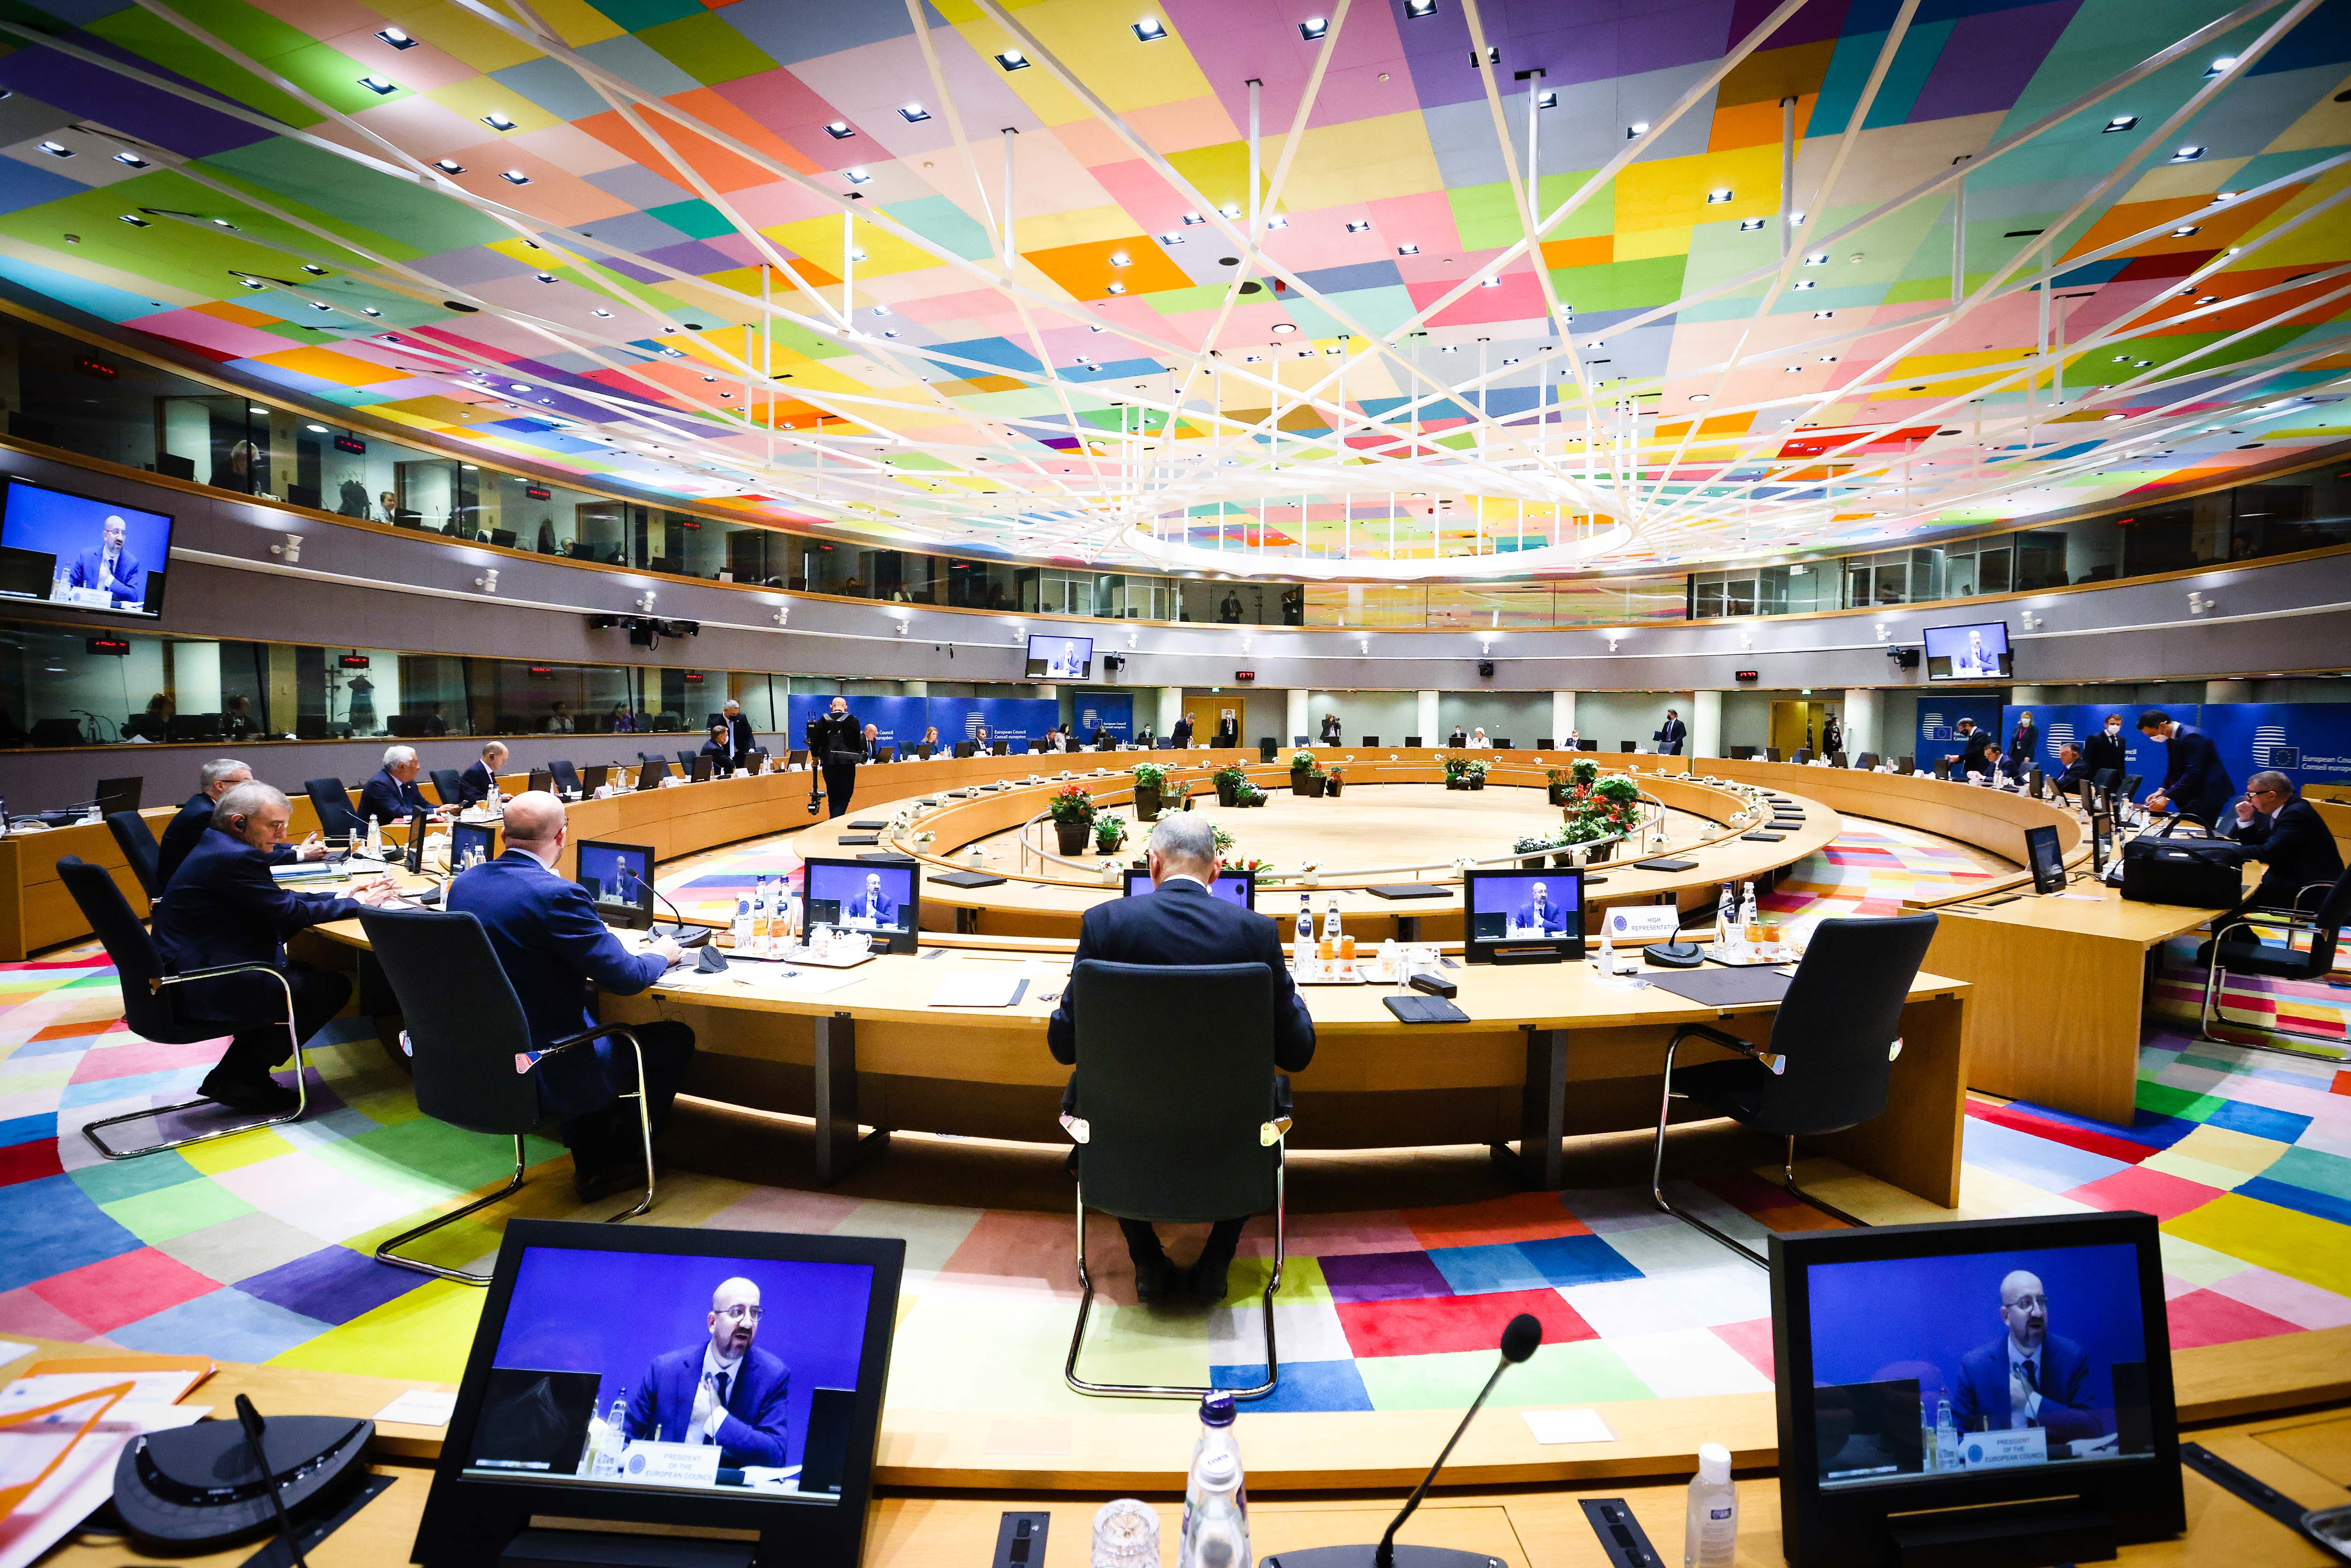 Θρίλερ στην σύνοδο κορυφής της ΕΕ: Ξανά στο τραπέζι το ενεργειακό εμπάργκο κατά της Ρωσίας